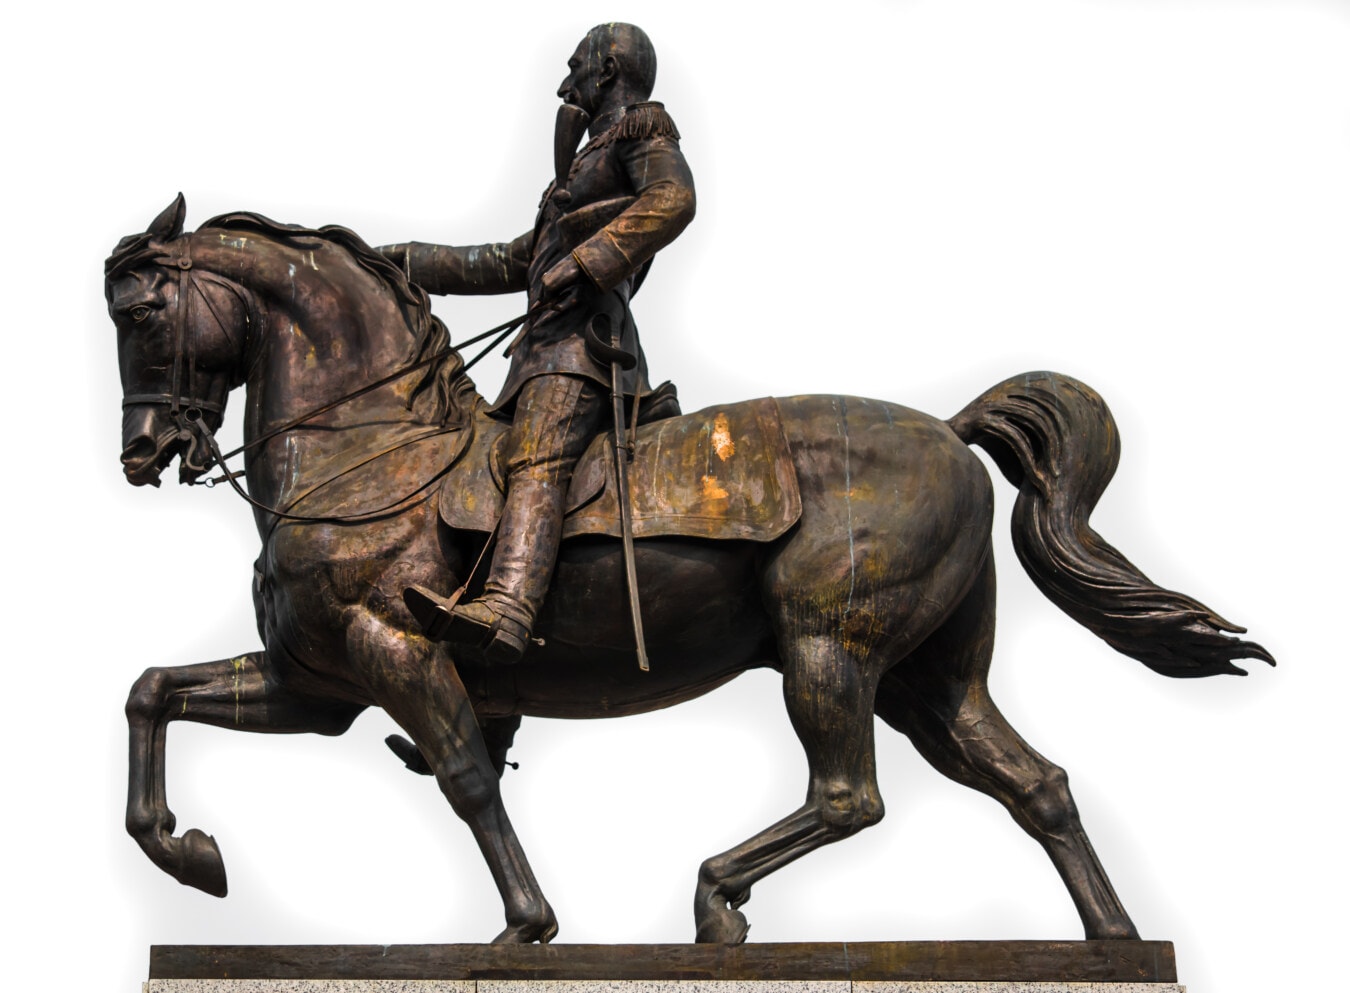 soldat, ordförande, de allmänna, brons, skulptur, Memorial, häst, staty, konst, antika